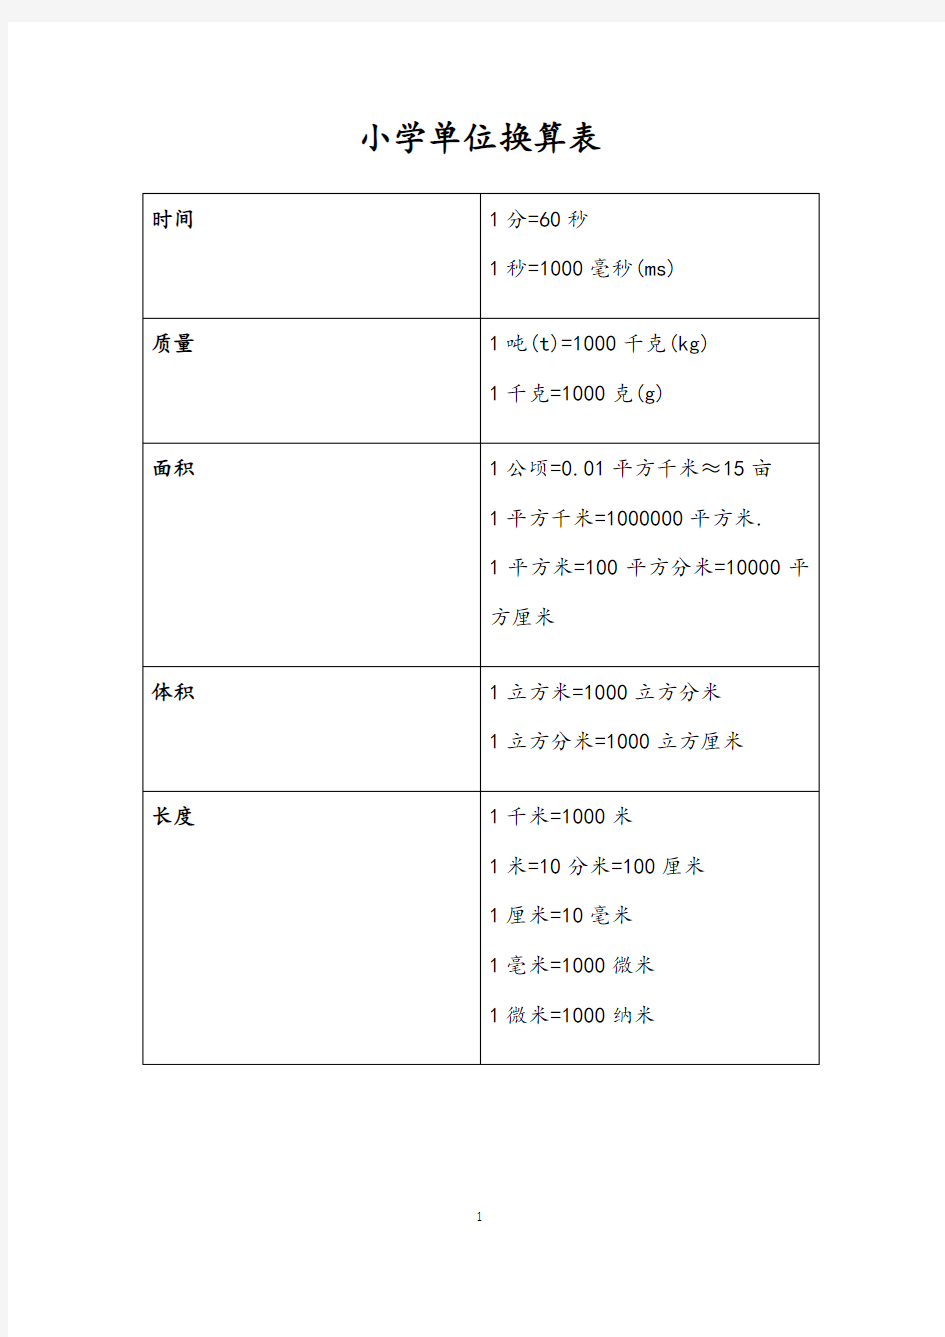 小学数学公式及其小学单位换算表